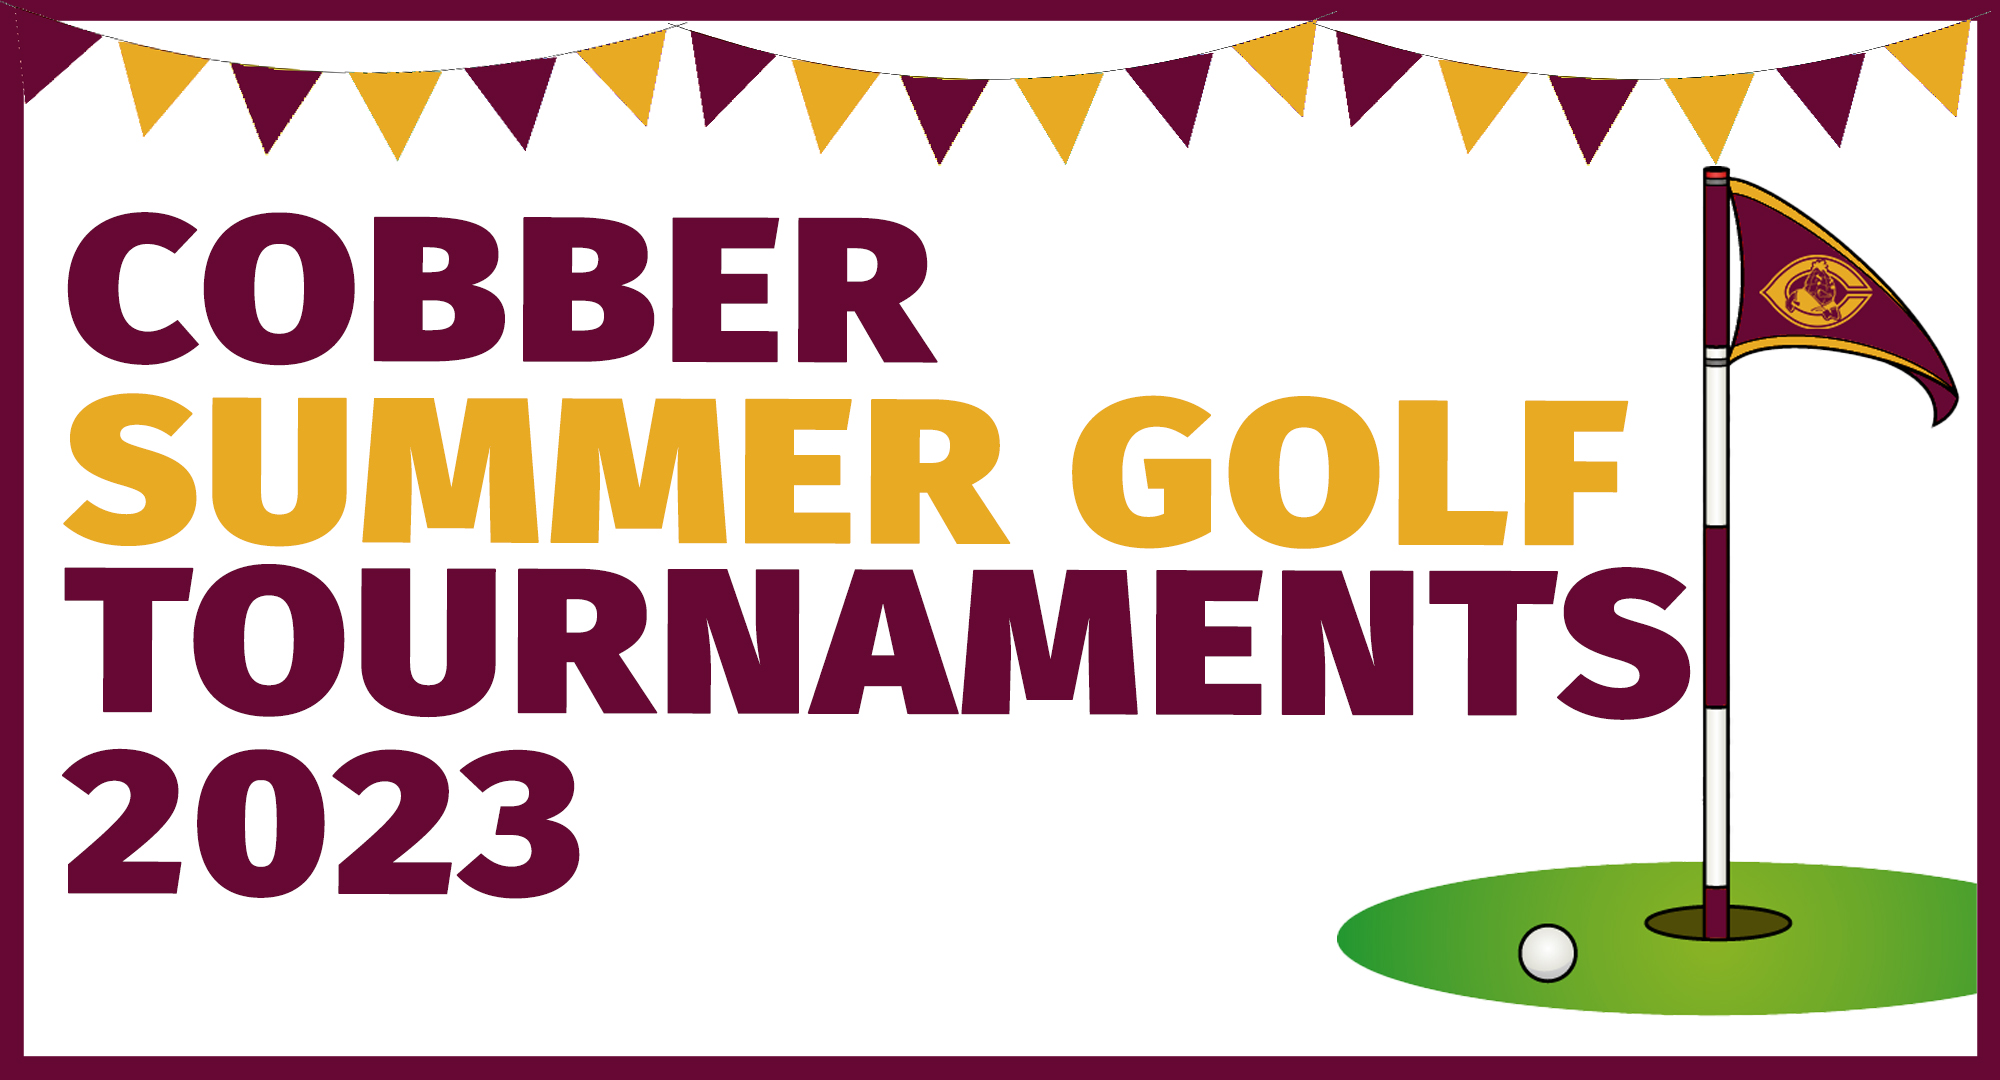 Cobber Summer Golf Tournaments 2023